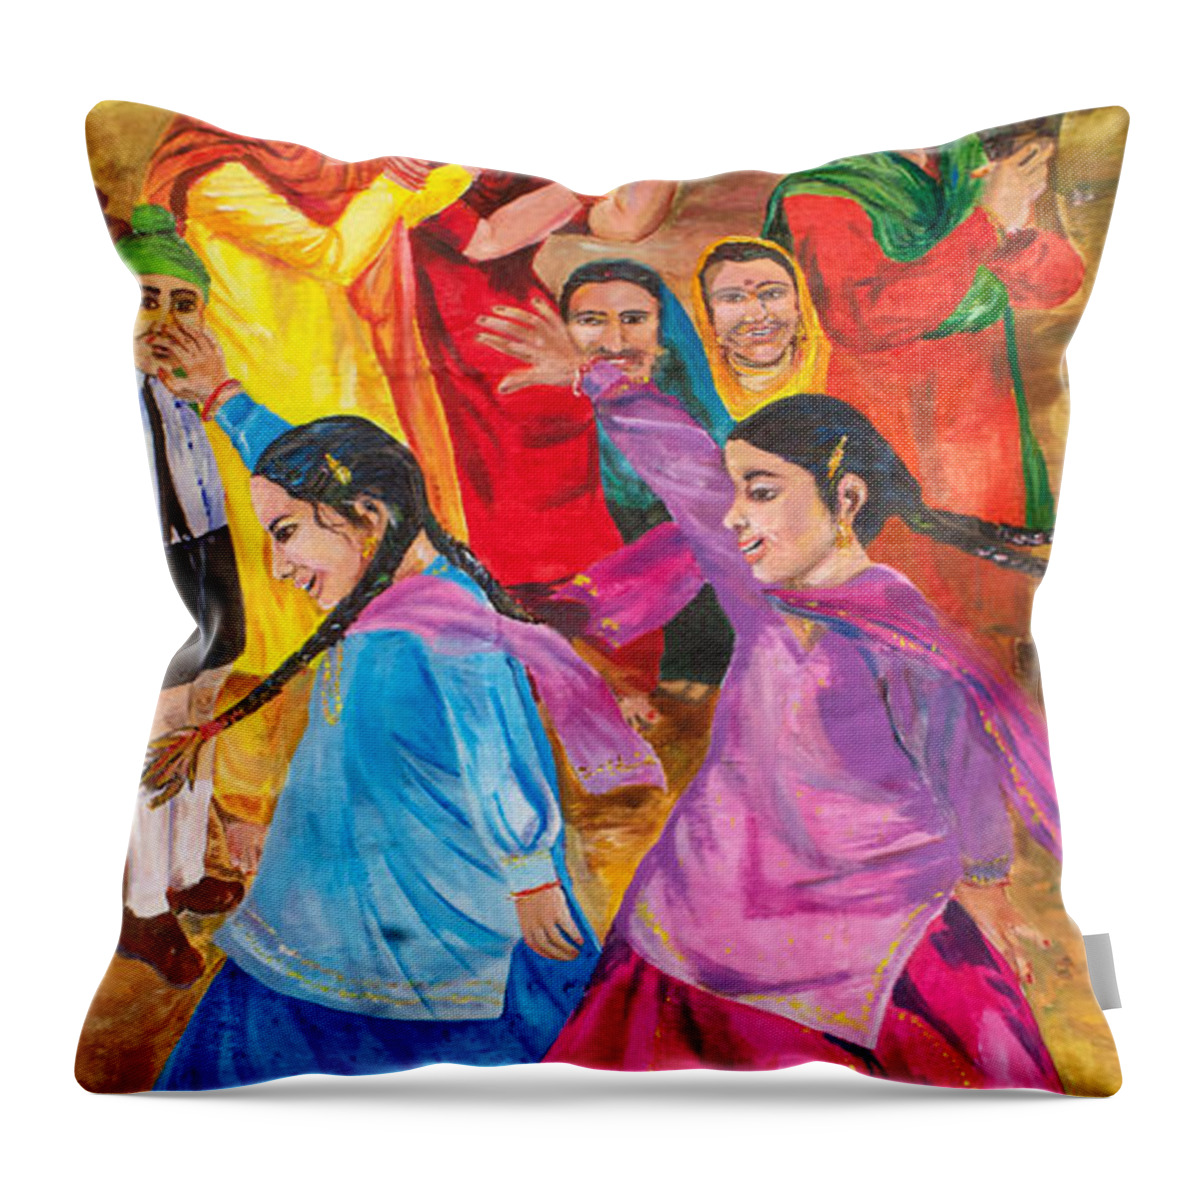 Sikh Art Throw Pillow featuring the painting Vasakhi in a Punjab village by Sarabjit Singh